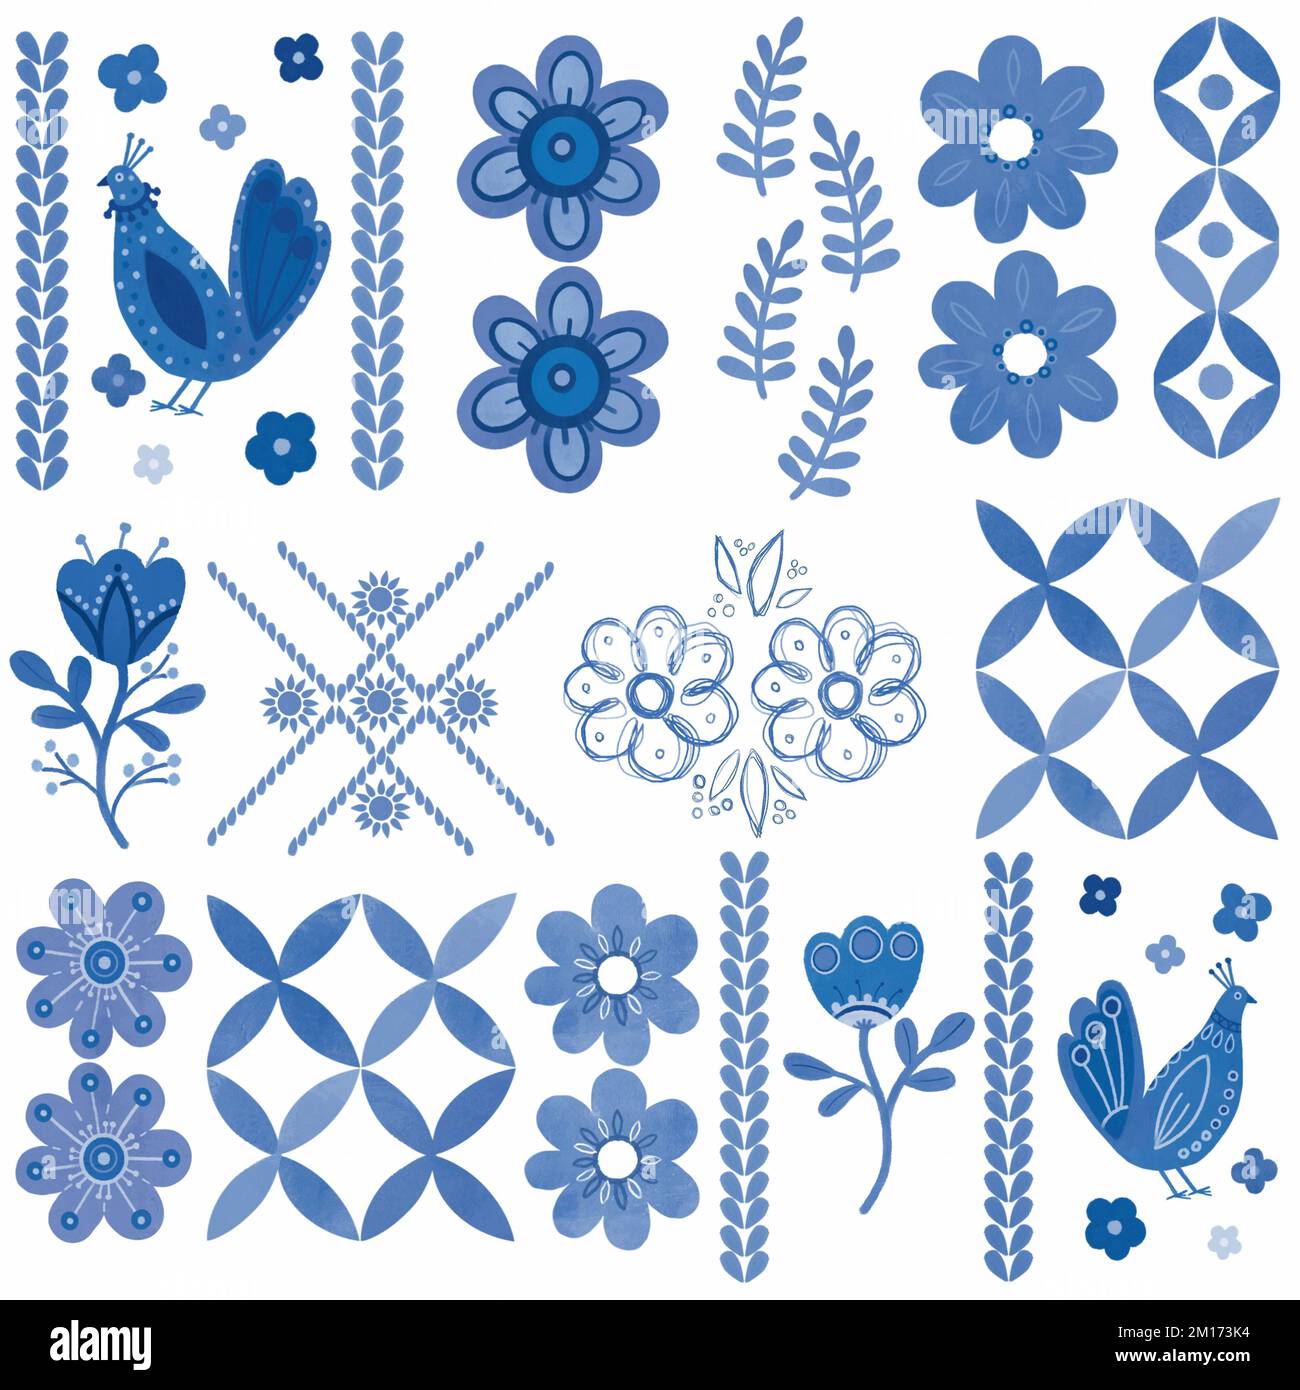 Motif floral bleu damassé à la main. Motif, décoration en mosaïque. Branche bleue, fleurs et feuilles. Élément décoratif azulejo bleu et blanc ornemental Banque D'Images